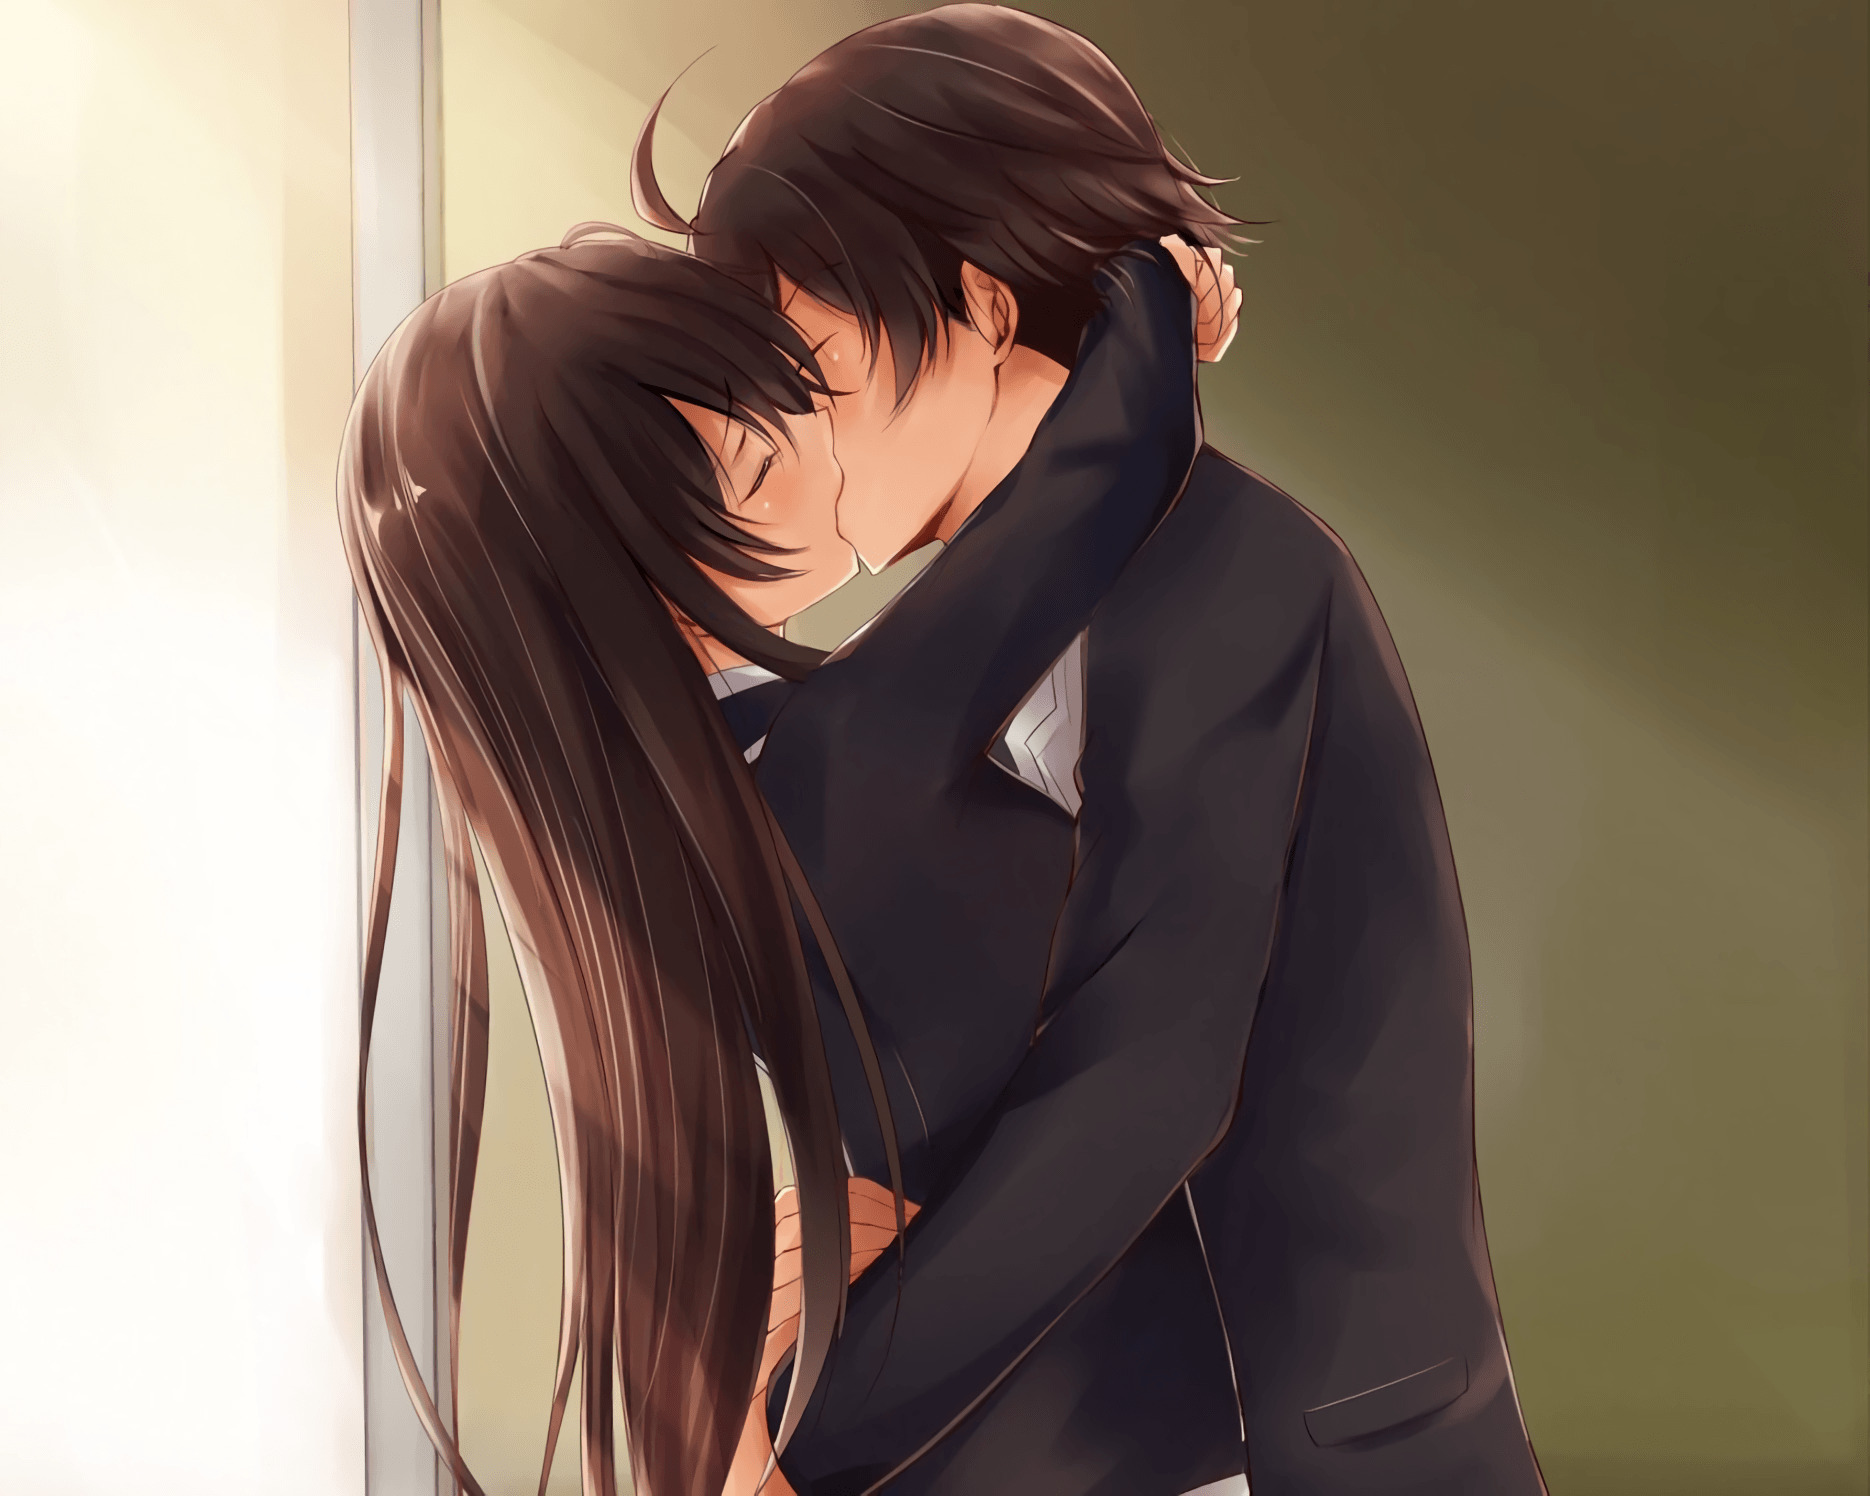 Top hình nền Anime hôn nhau lãng mạn tuyệt đẹp  Trường Ngoại Ngữ Tin Học  Quốc Tế TÂN VIỆT MỸ